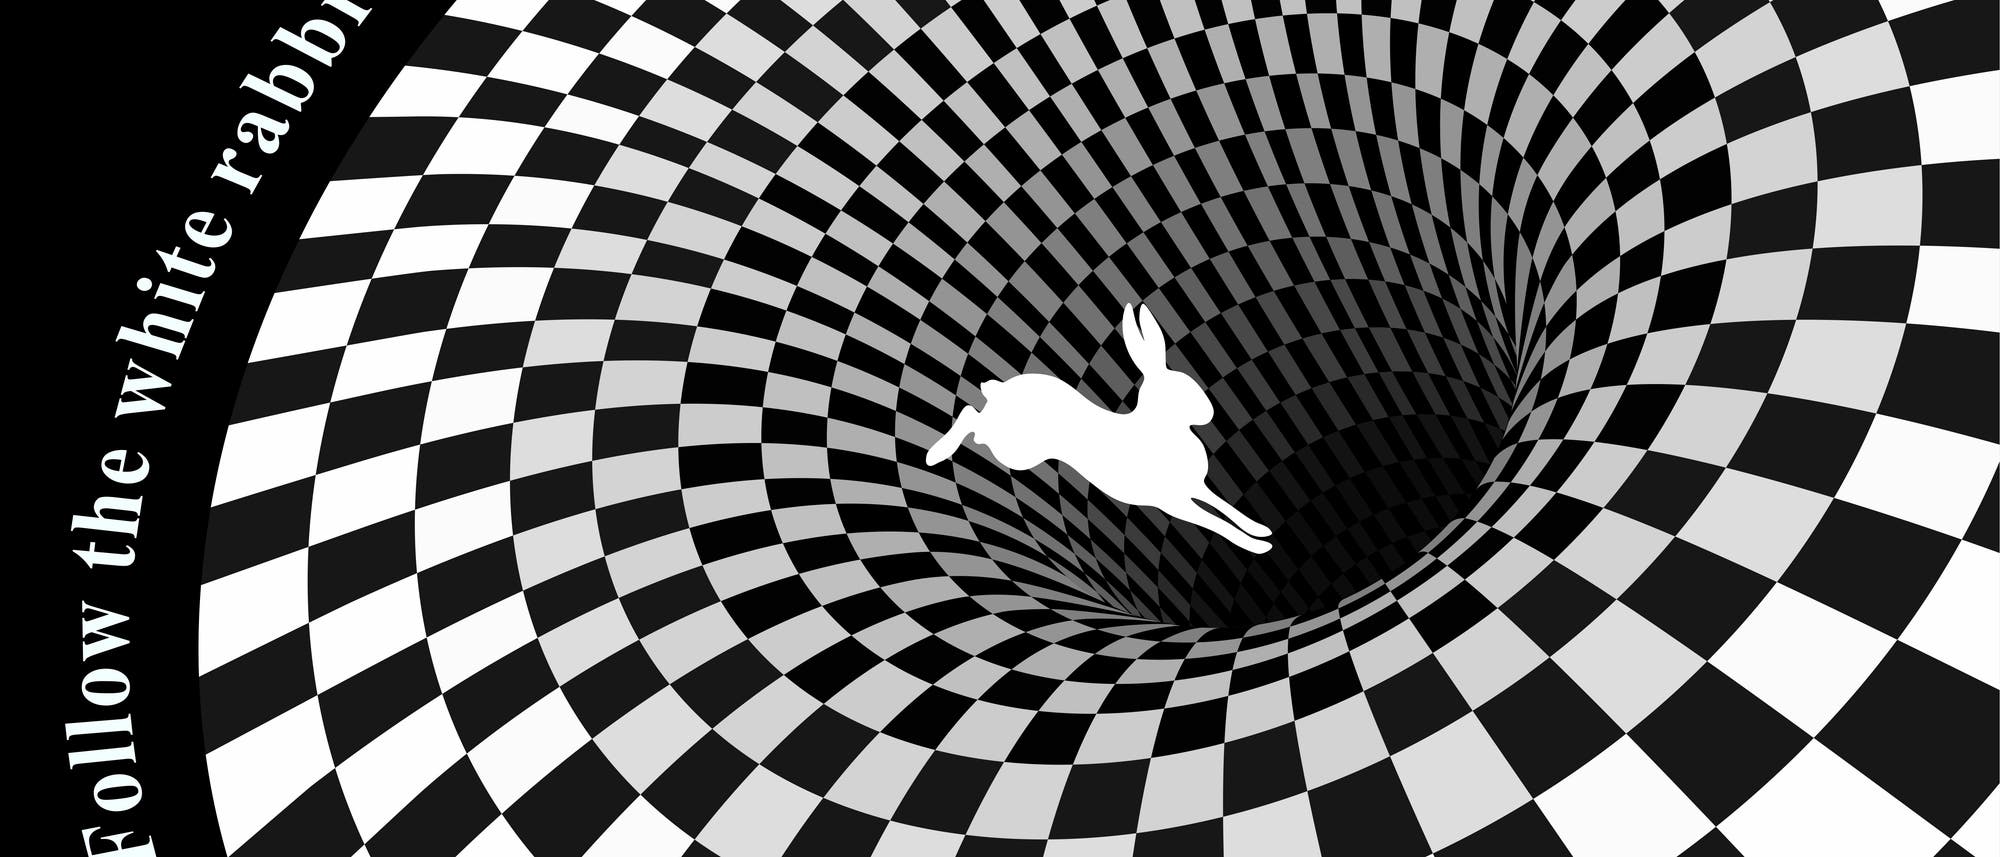 Zeichnung von einem weißen Kaninchen, das in einen Tunnel springt